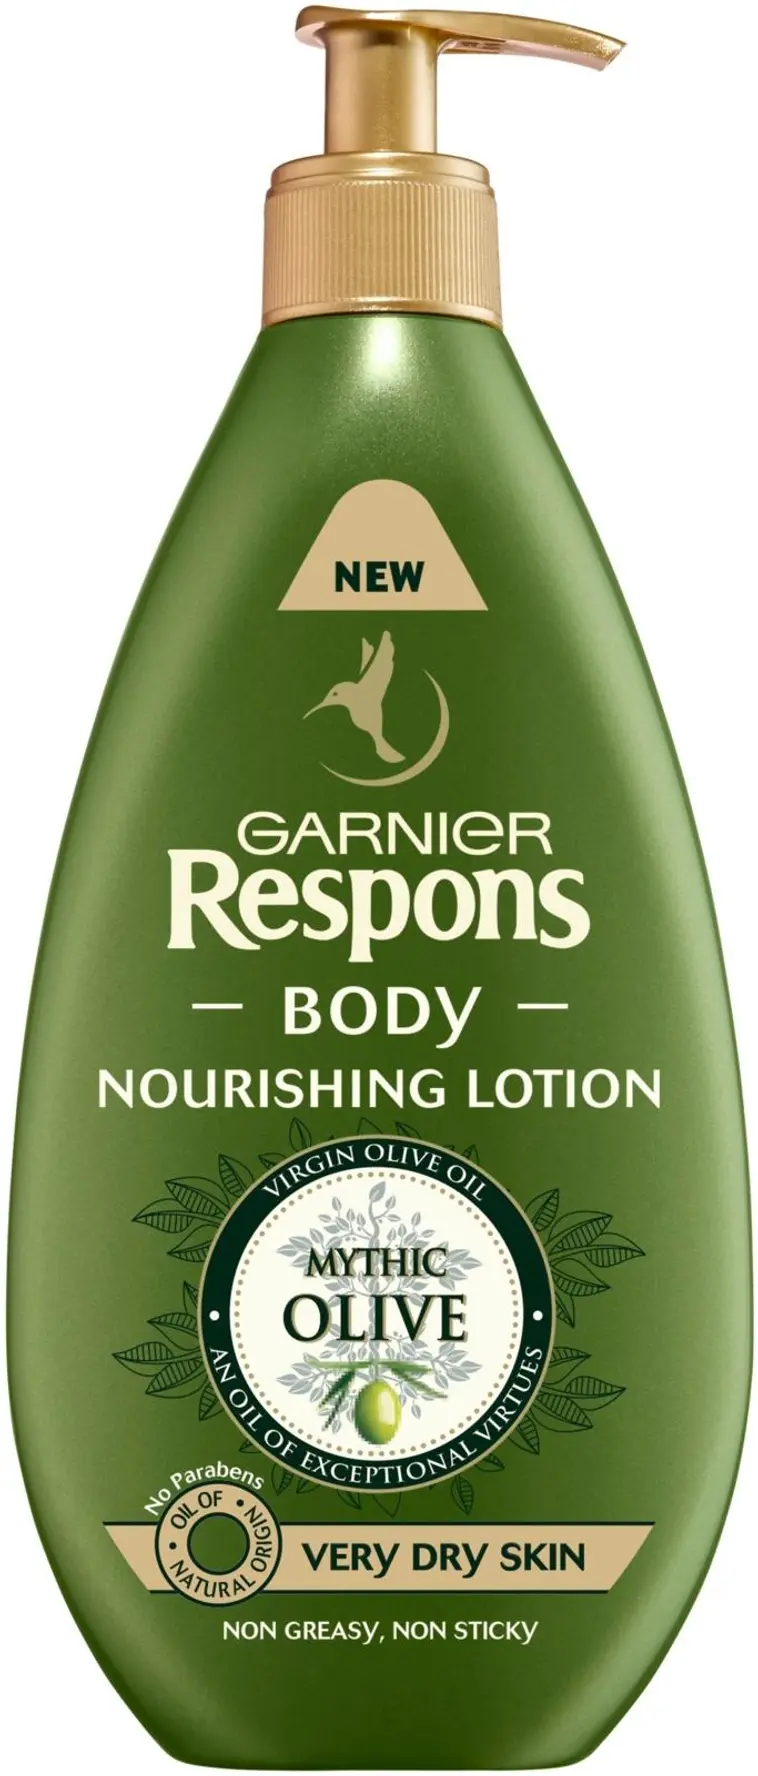 Garnier Respons Body Mythic Olive Nourishing lotion vartaloemulsio erittäin kuivalle iholle 400ml